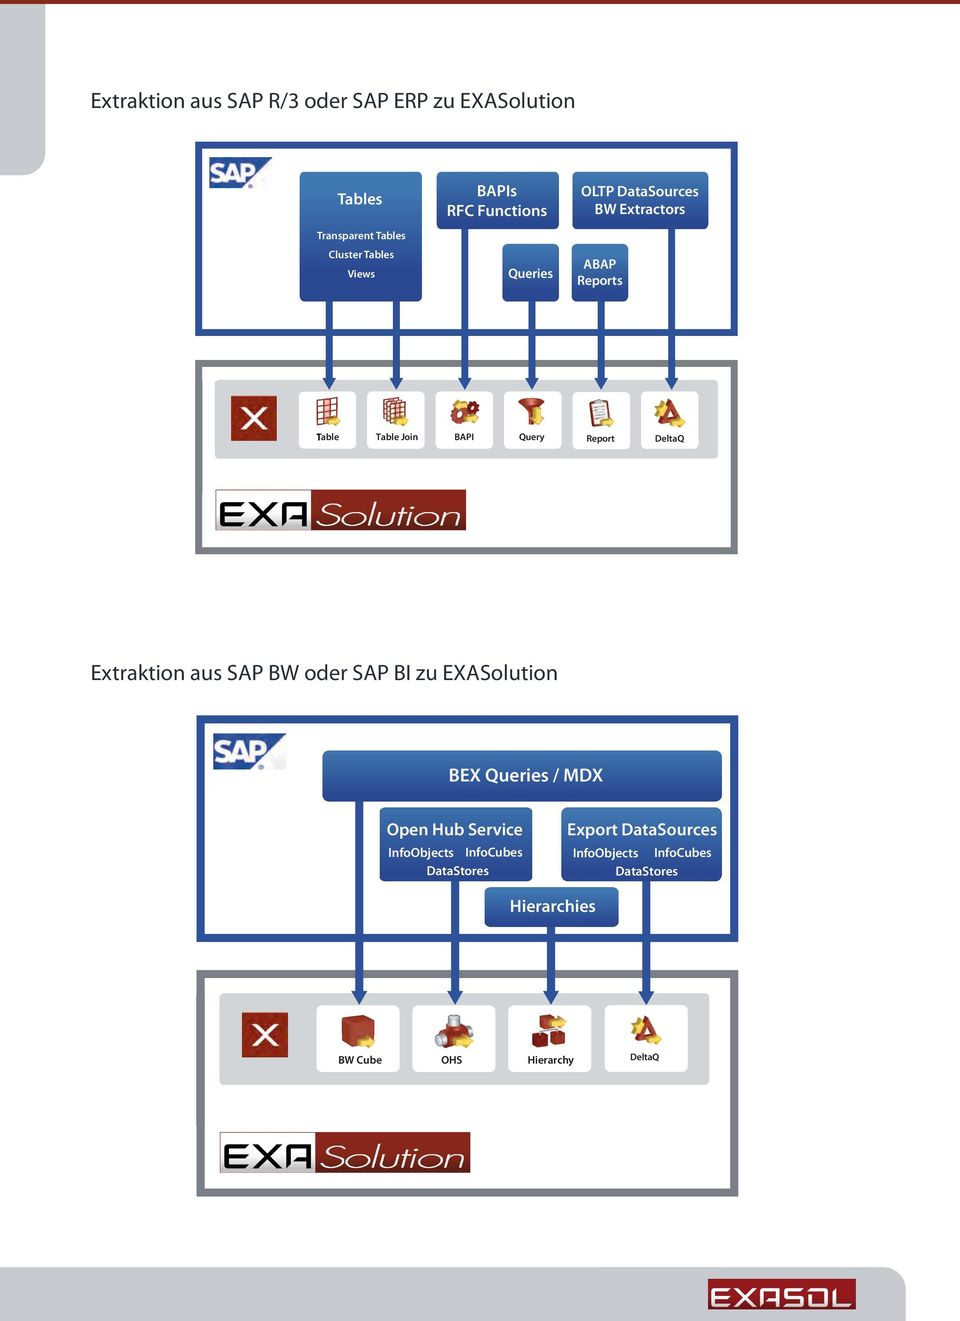 DeltaQ Extraktion aus SAP BW oder SAP BI zu EXASolution BEX Queries / MDX Open Hub Service InfoObjects